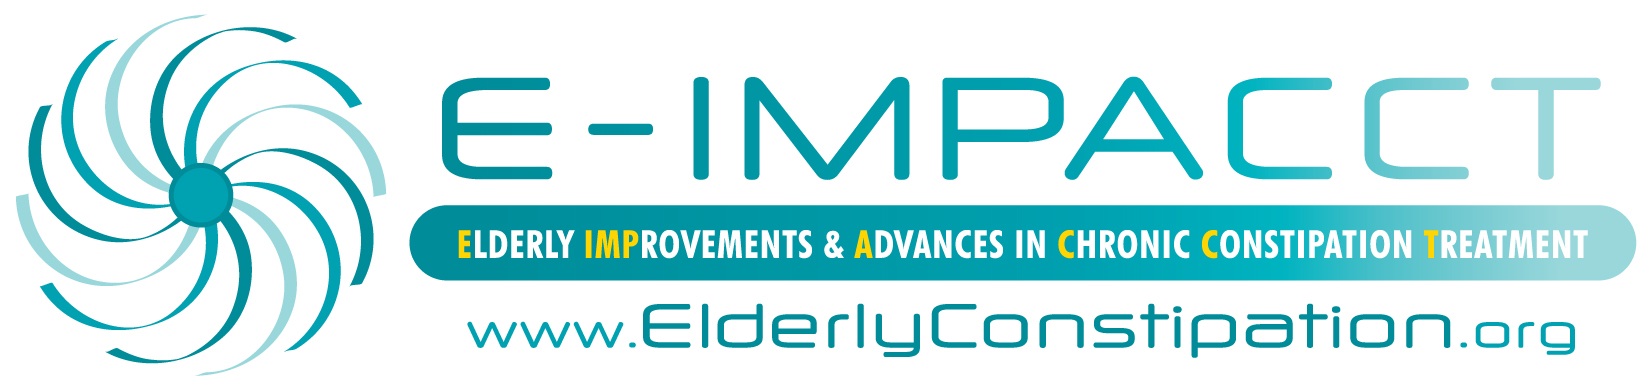 E-IMPACCT Logo with URL